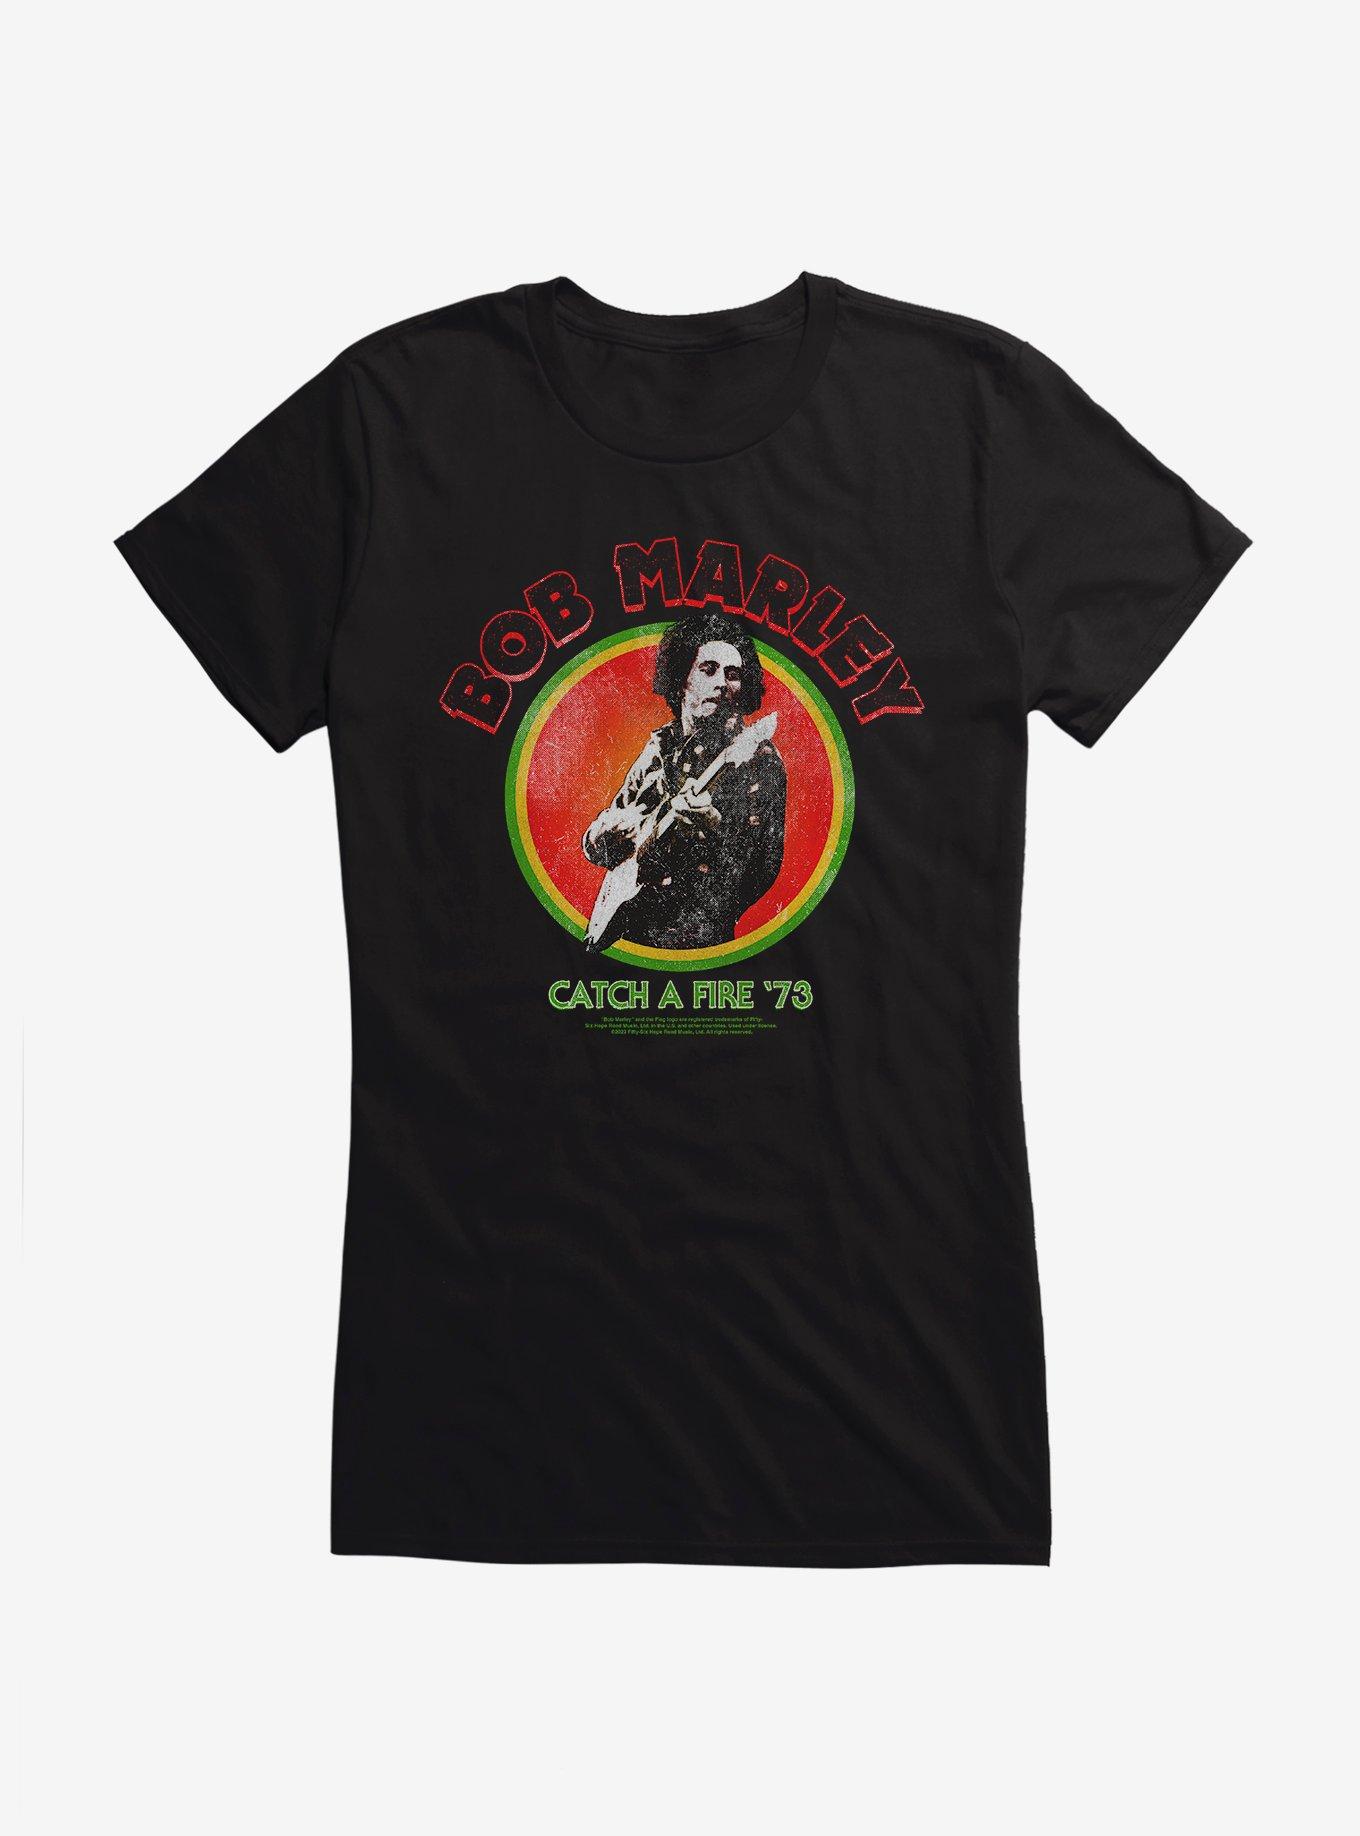 Bob Marley Catch A Fire '73 Girls T-Shirt